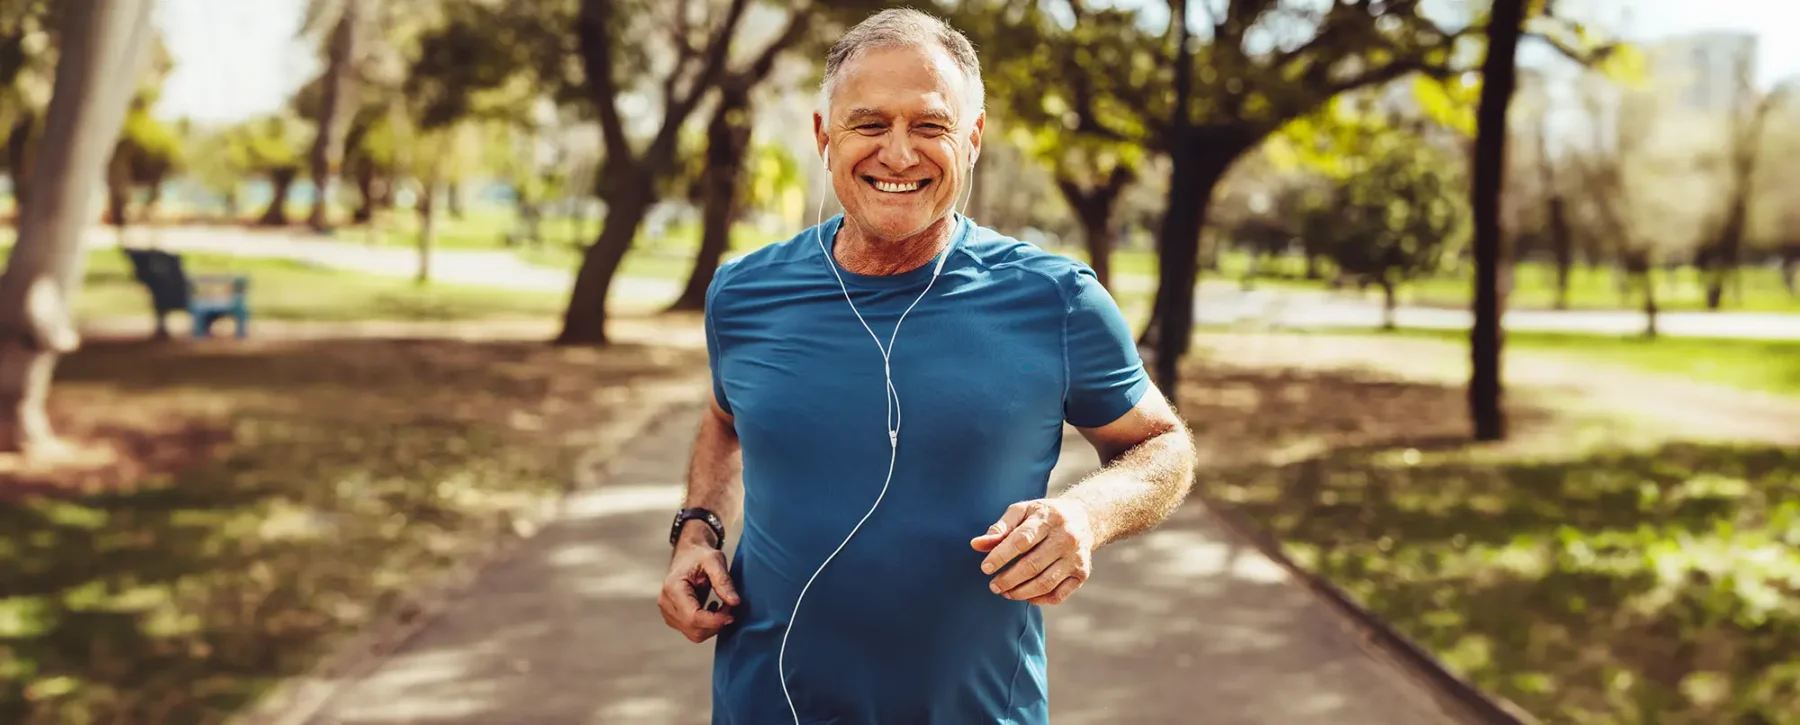 Older man jogging in a park